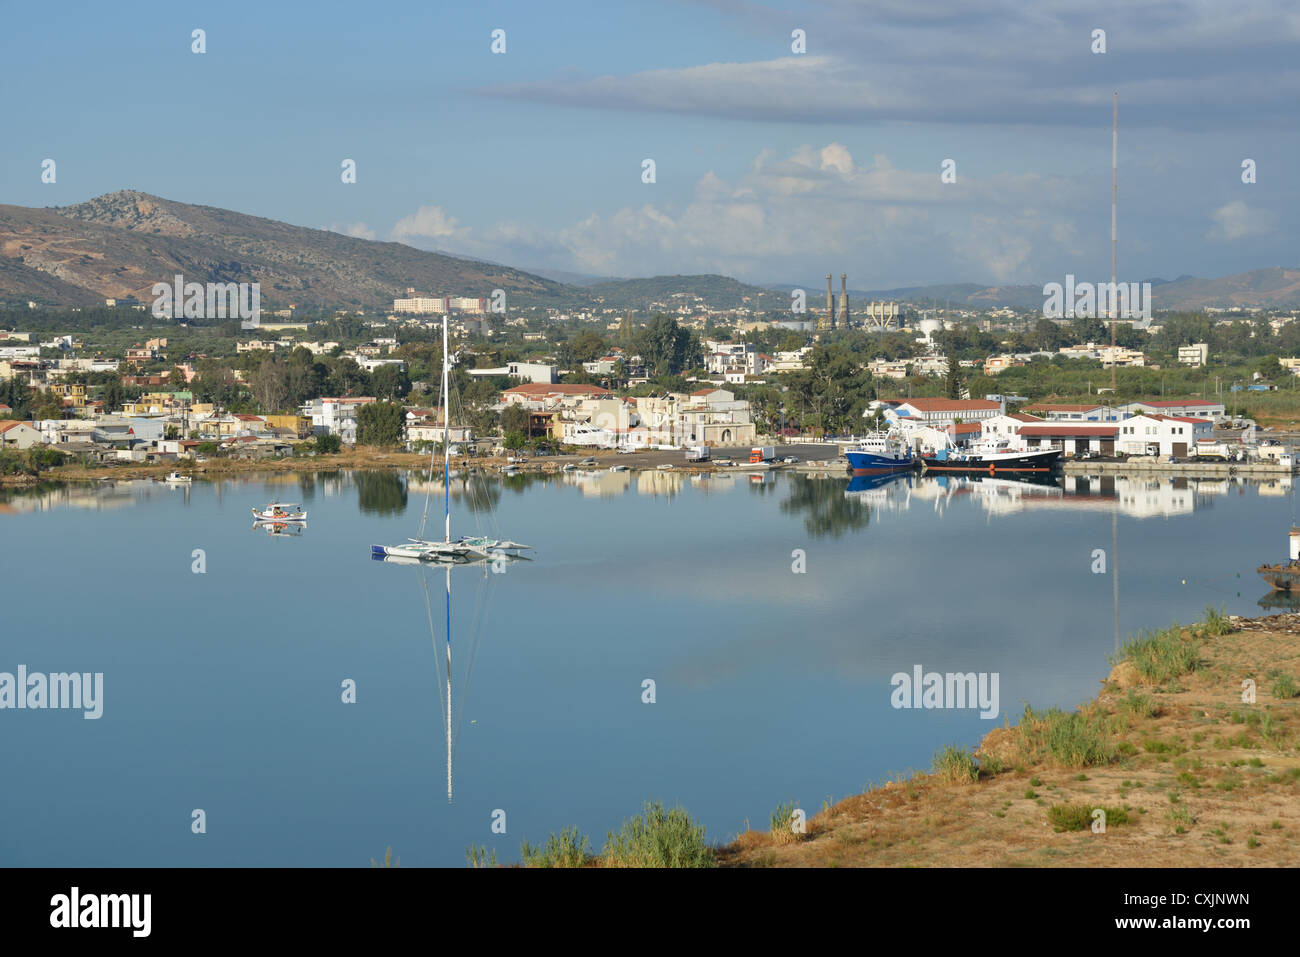 Harbour of Souda, Souda, Chania Prefecture, Crete, Greece Stock Photo